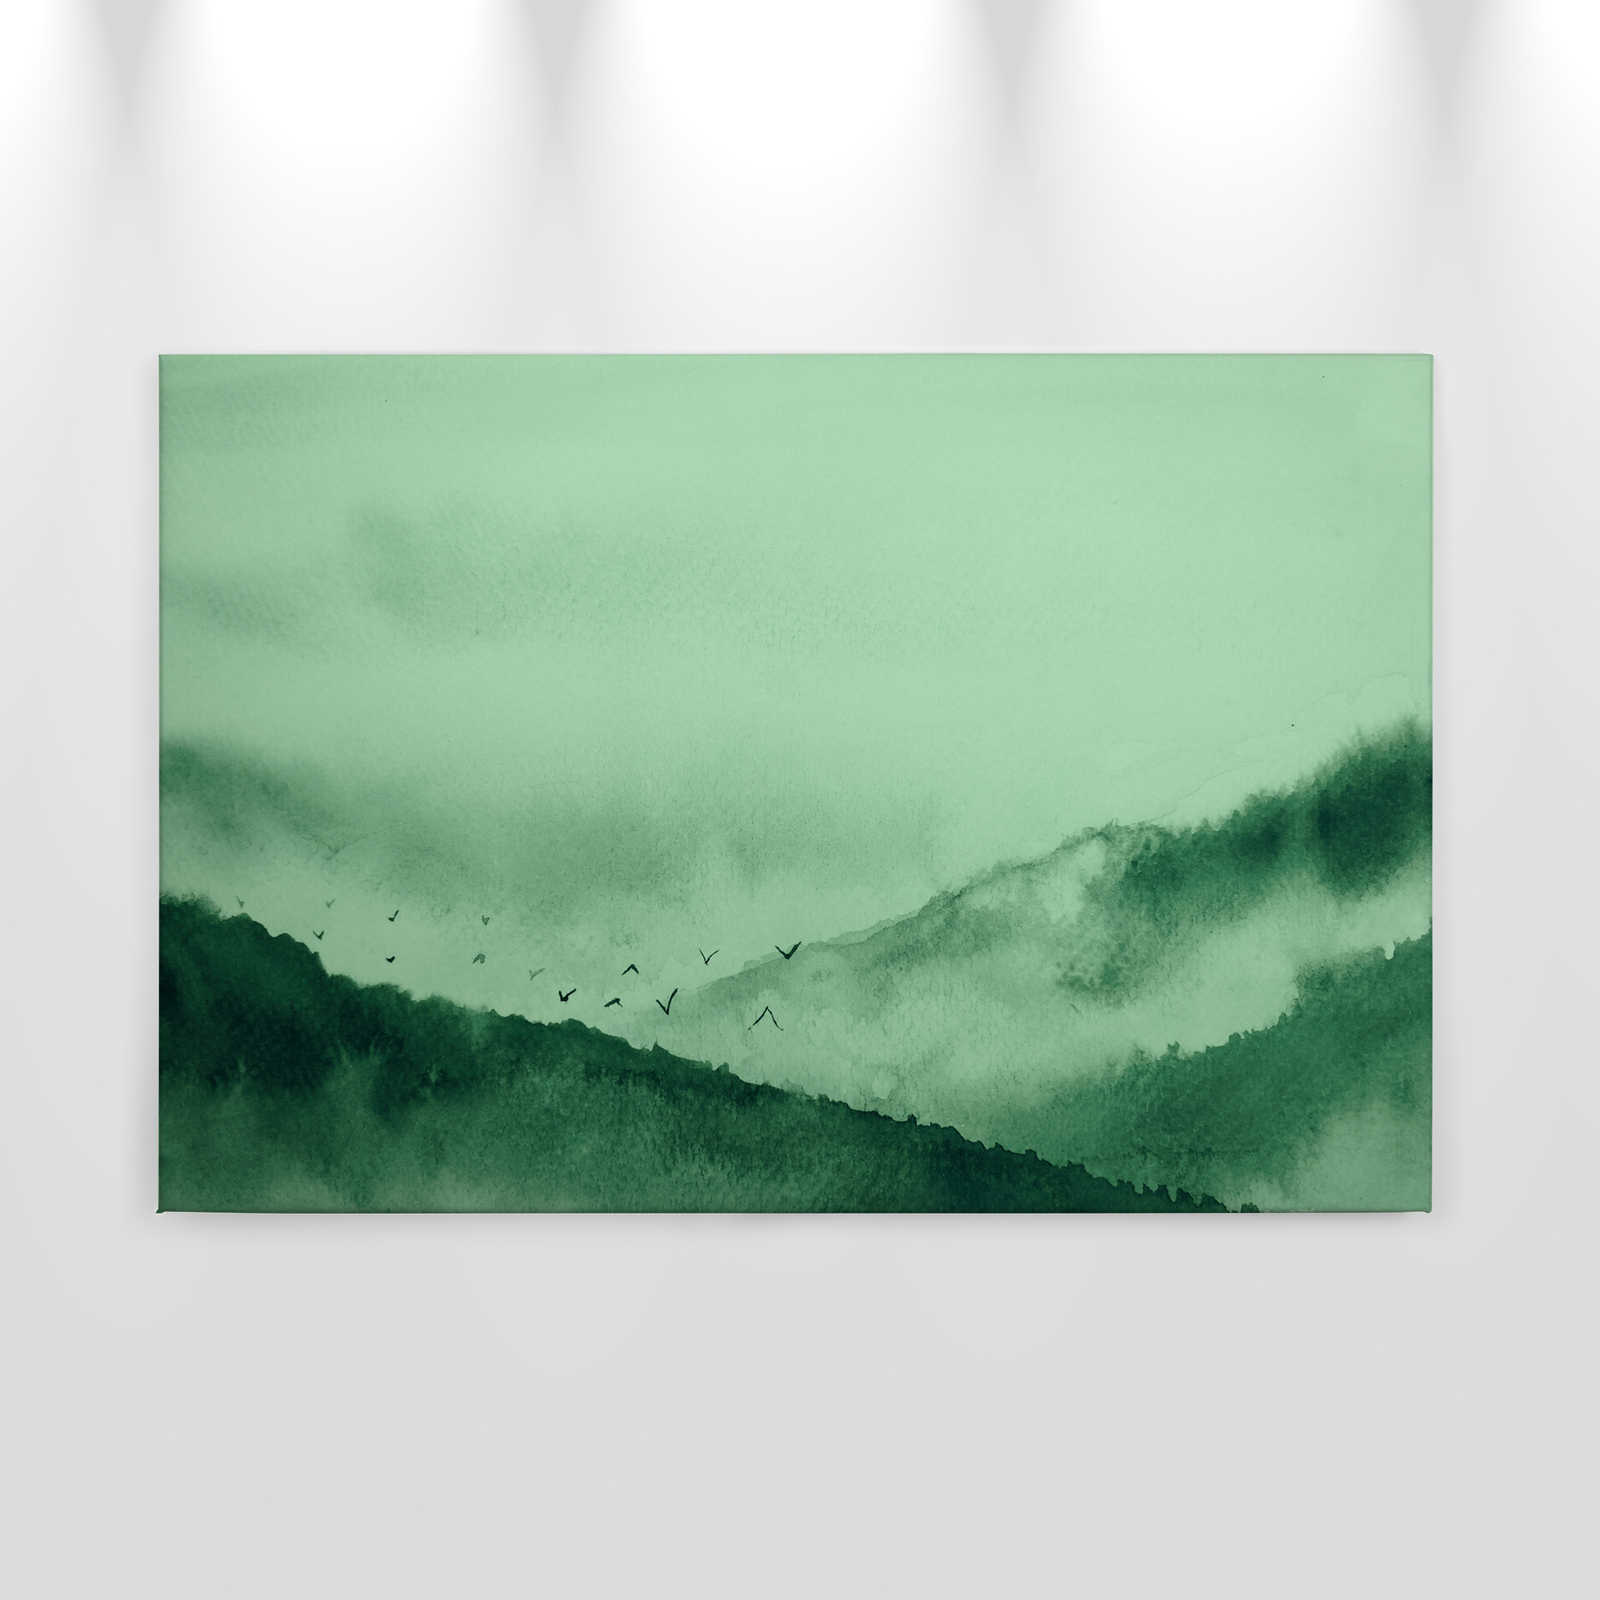             Leinwand mit nebeliger Landschaft im Gemälde-Stil | grün, schwarz – 0,90 m x 0,60 m
        